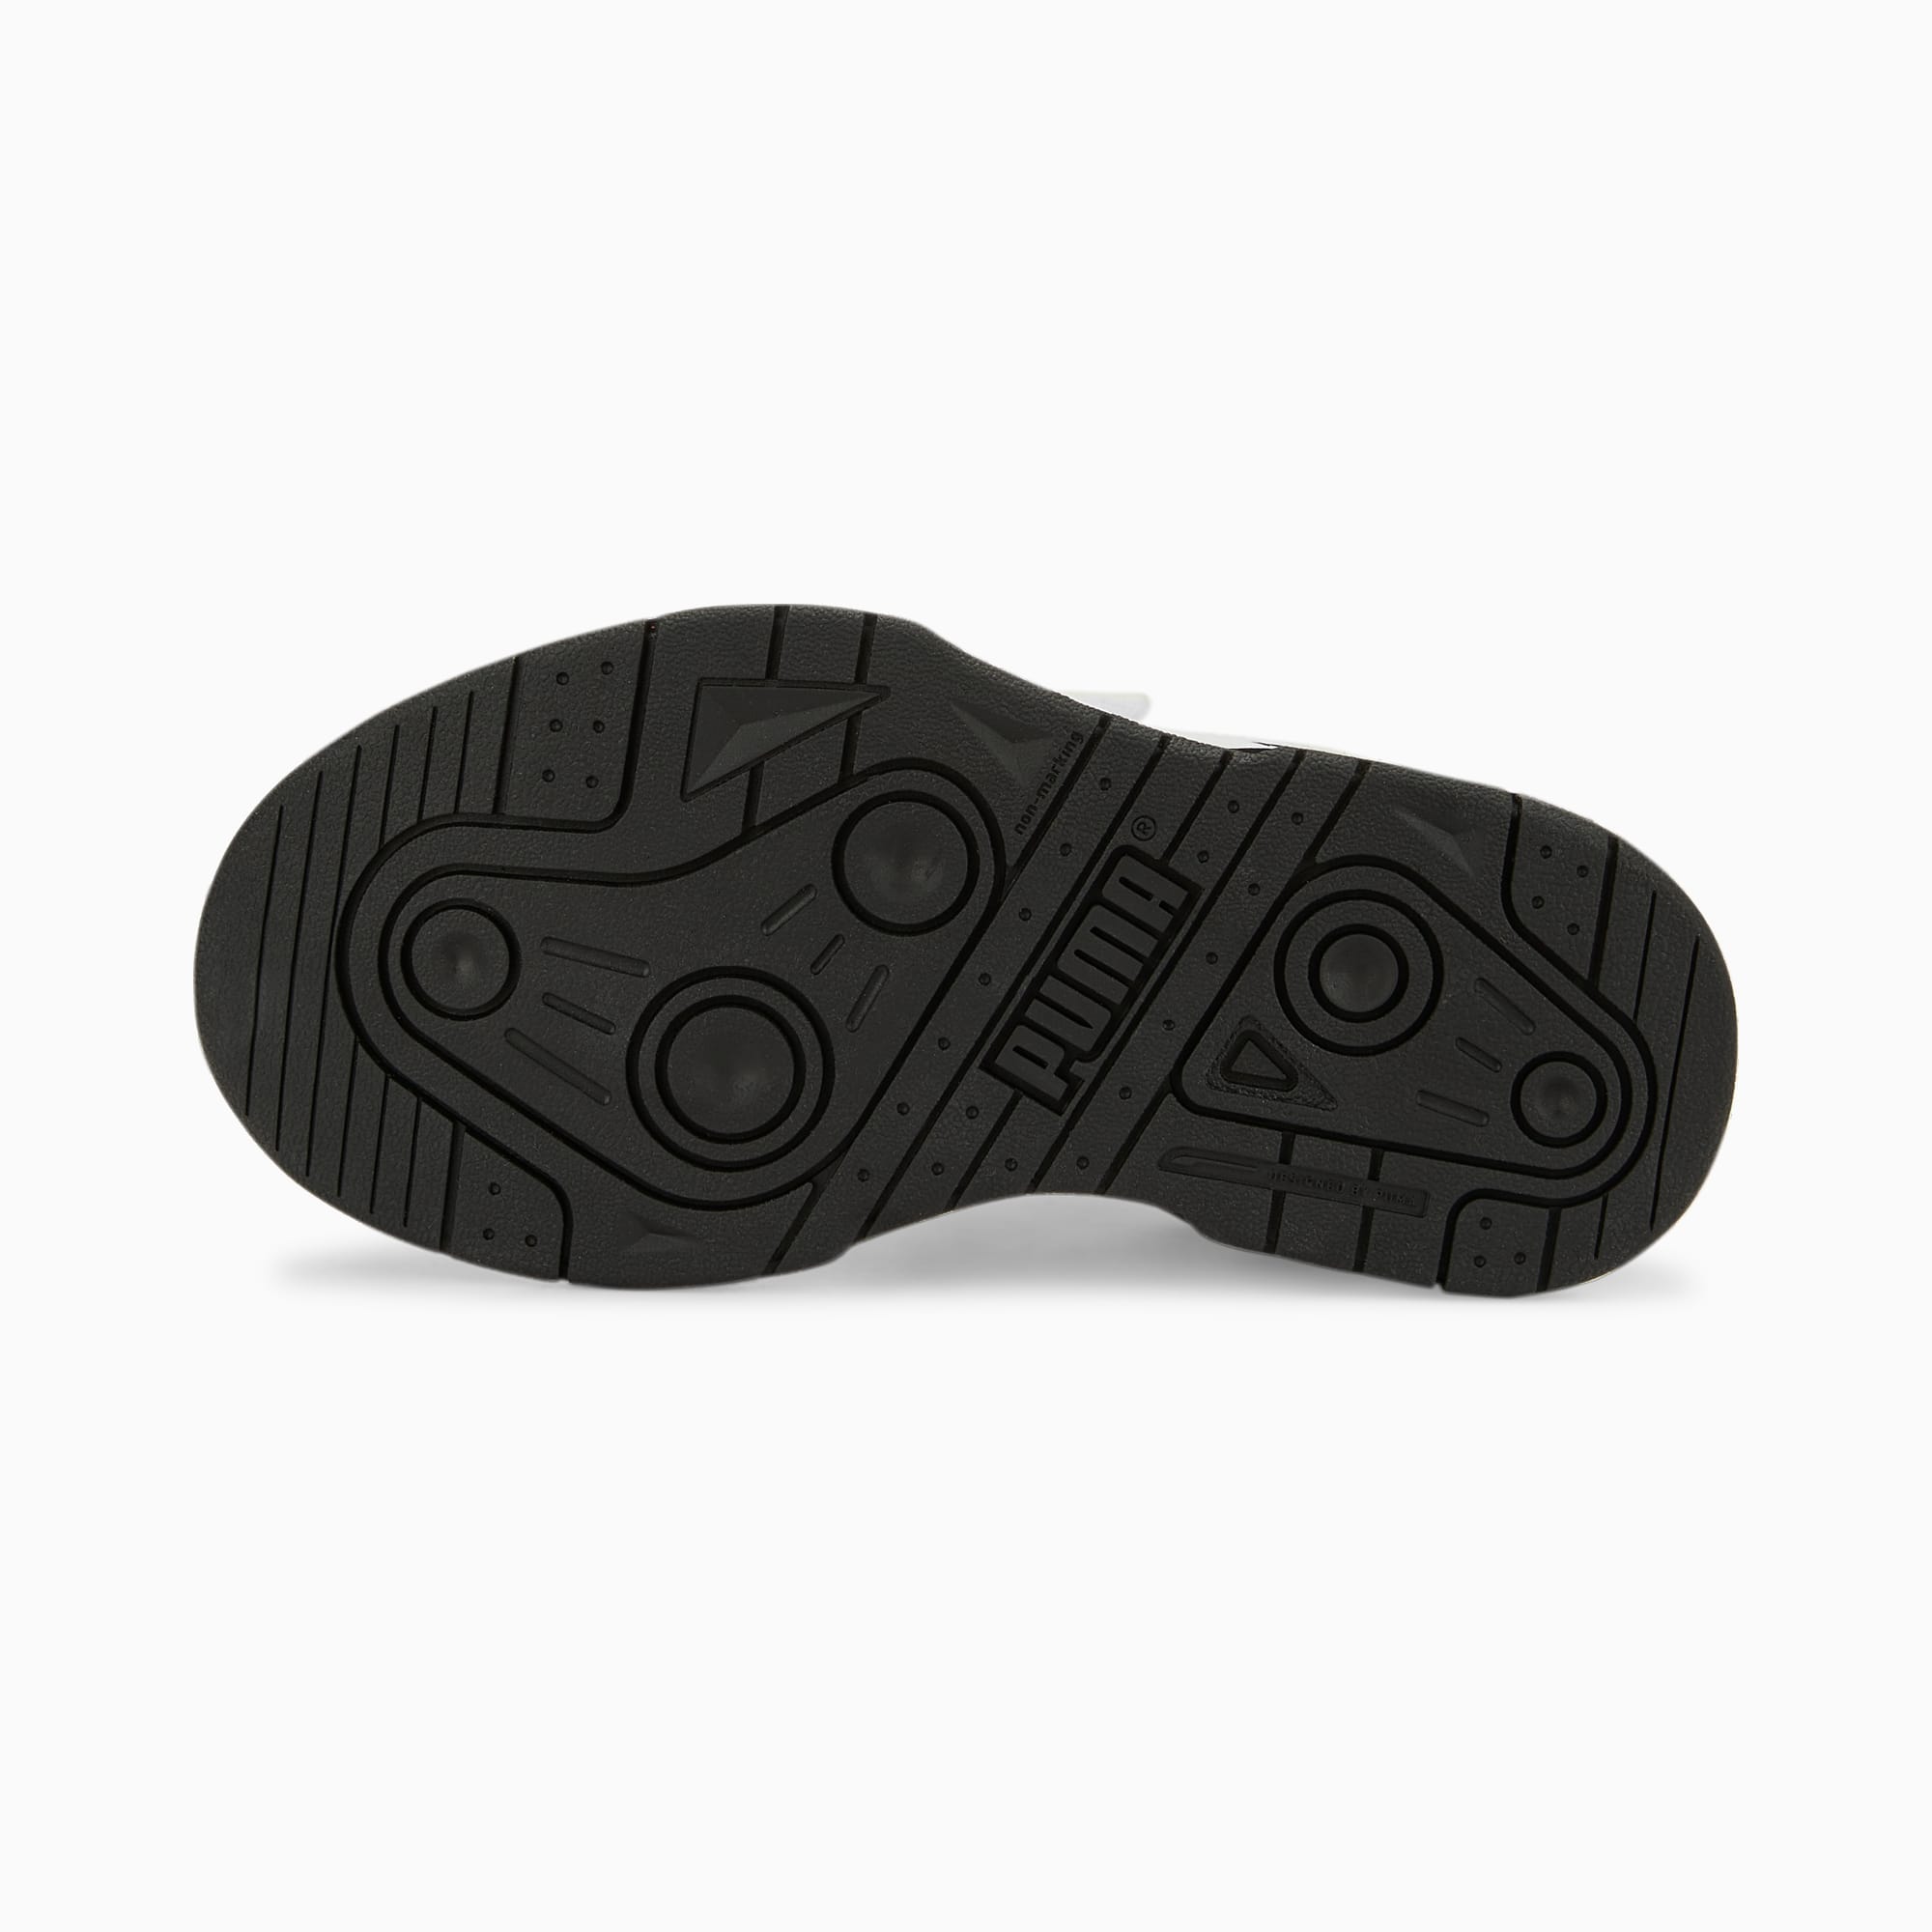 Scarpe Sneakers Slipstream In Pelle Con Chiusura Alternativa Bambino, Bianco/Nero/Altro